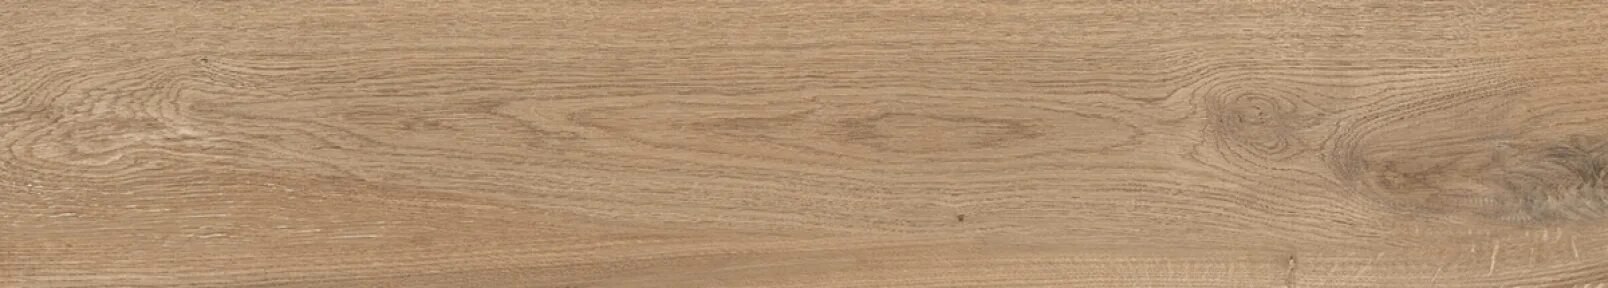 Brown 20. Cypress Wood Sandle керамогранит темно-бежевый 20х120 матовый структурный. Porcelanosa Manhattan Cognac. Риве Антика Рива 20x120. Borneo керамогранит коричневый ректифицированный 20x120.